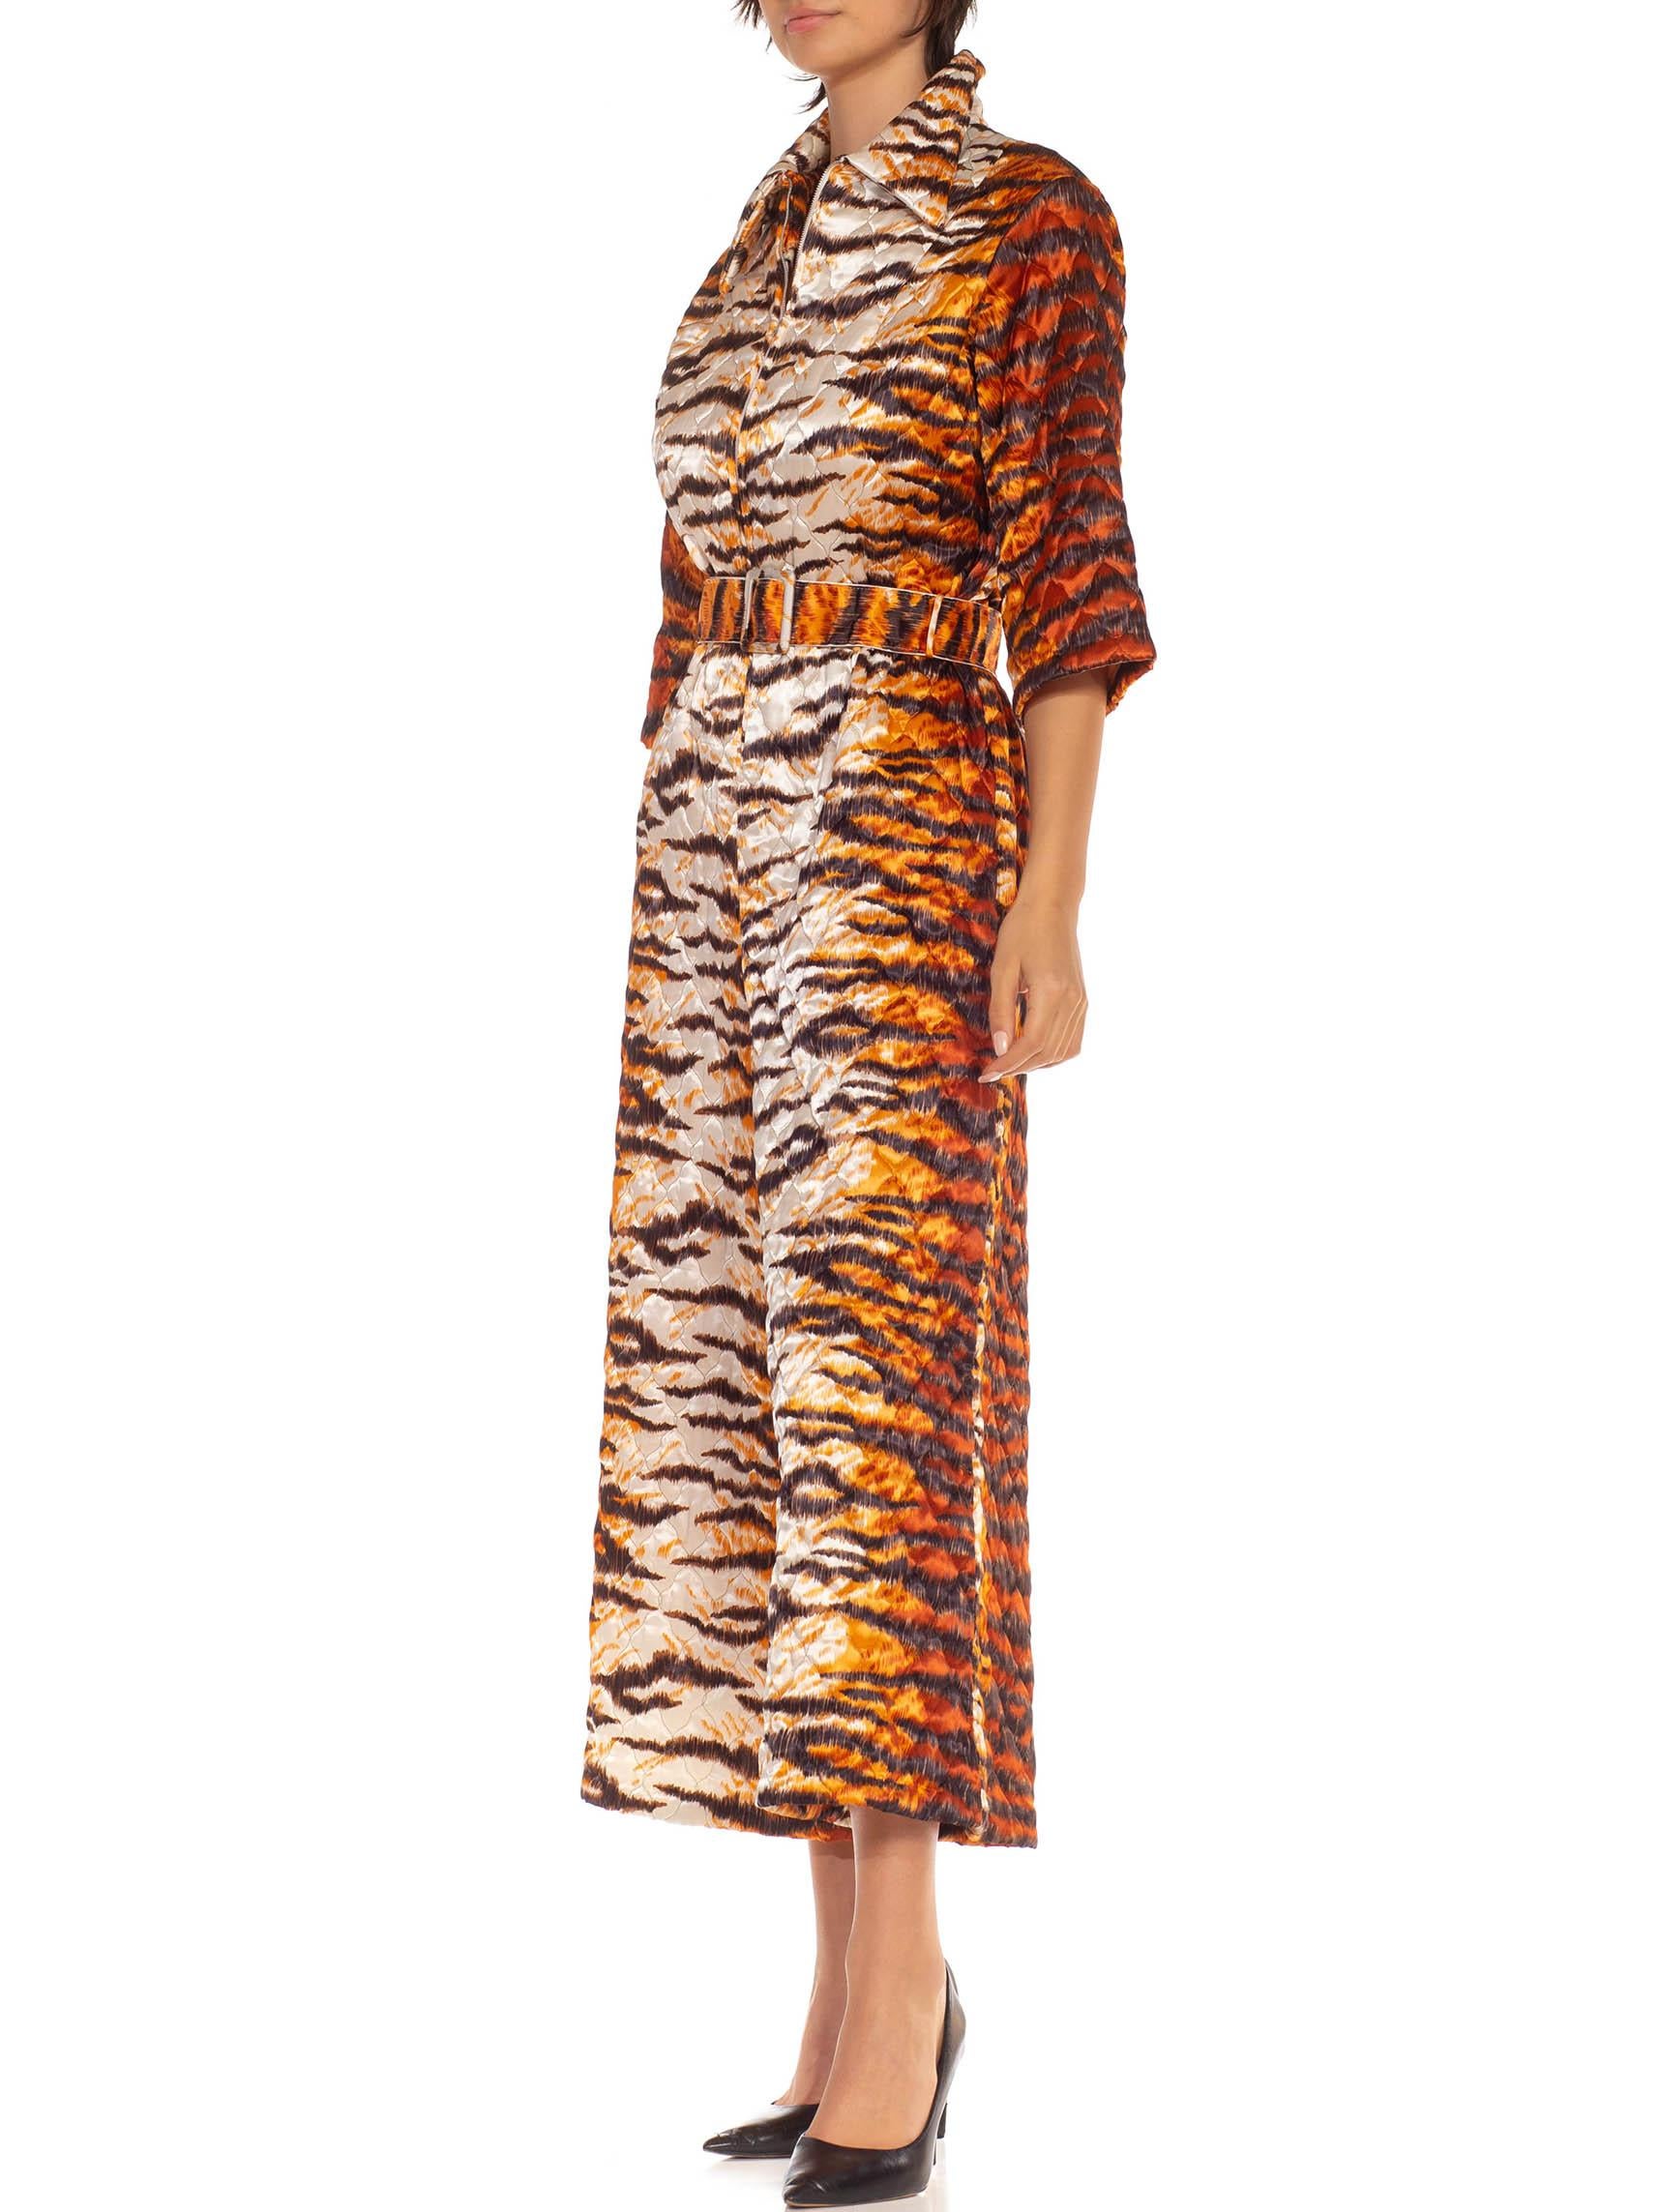 Combinaison matelassée en polyester mélangé imprimé tigre orange et blanc des années 1970 en vente 3